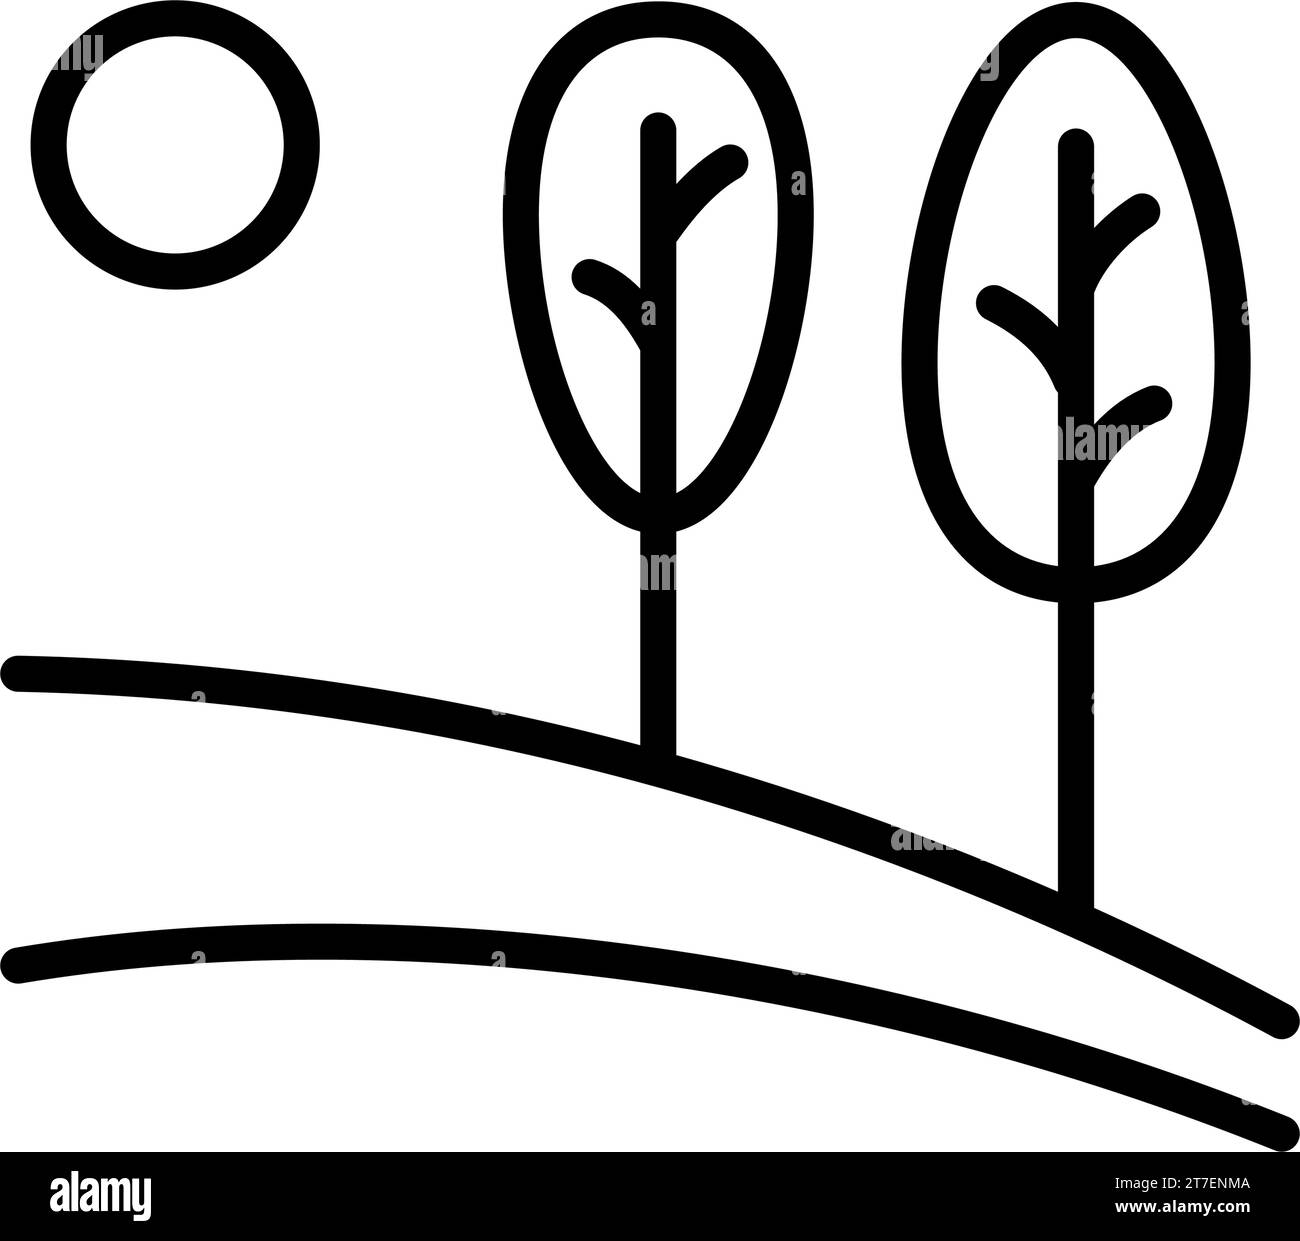 Logo vettoriale della natura in stile lineare. Icona di un paesaggio semplice con alberi, sole, campi. Emblema aziendale, distintivo per viaggi, agricoltura ed ecol Illustrazione Vettoriale